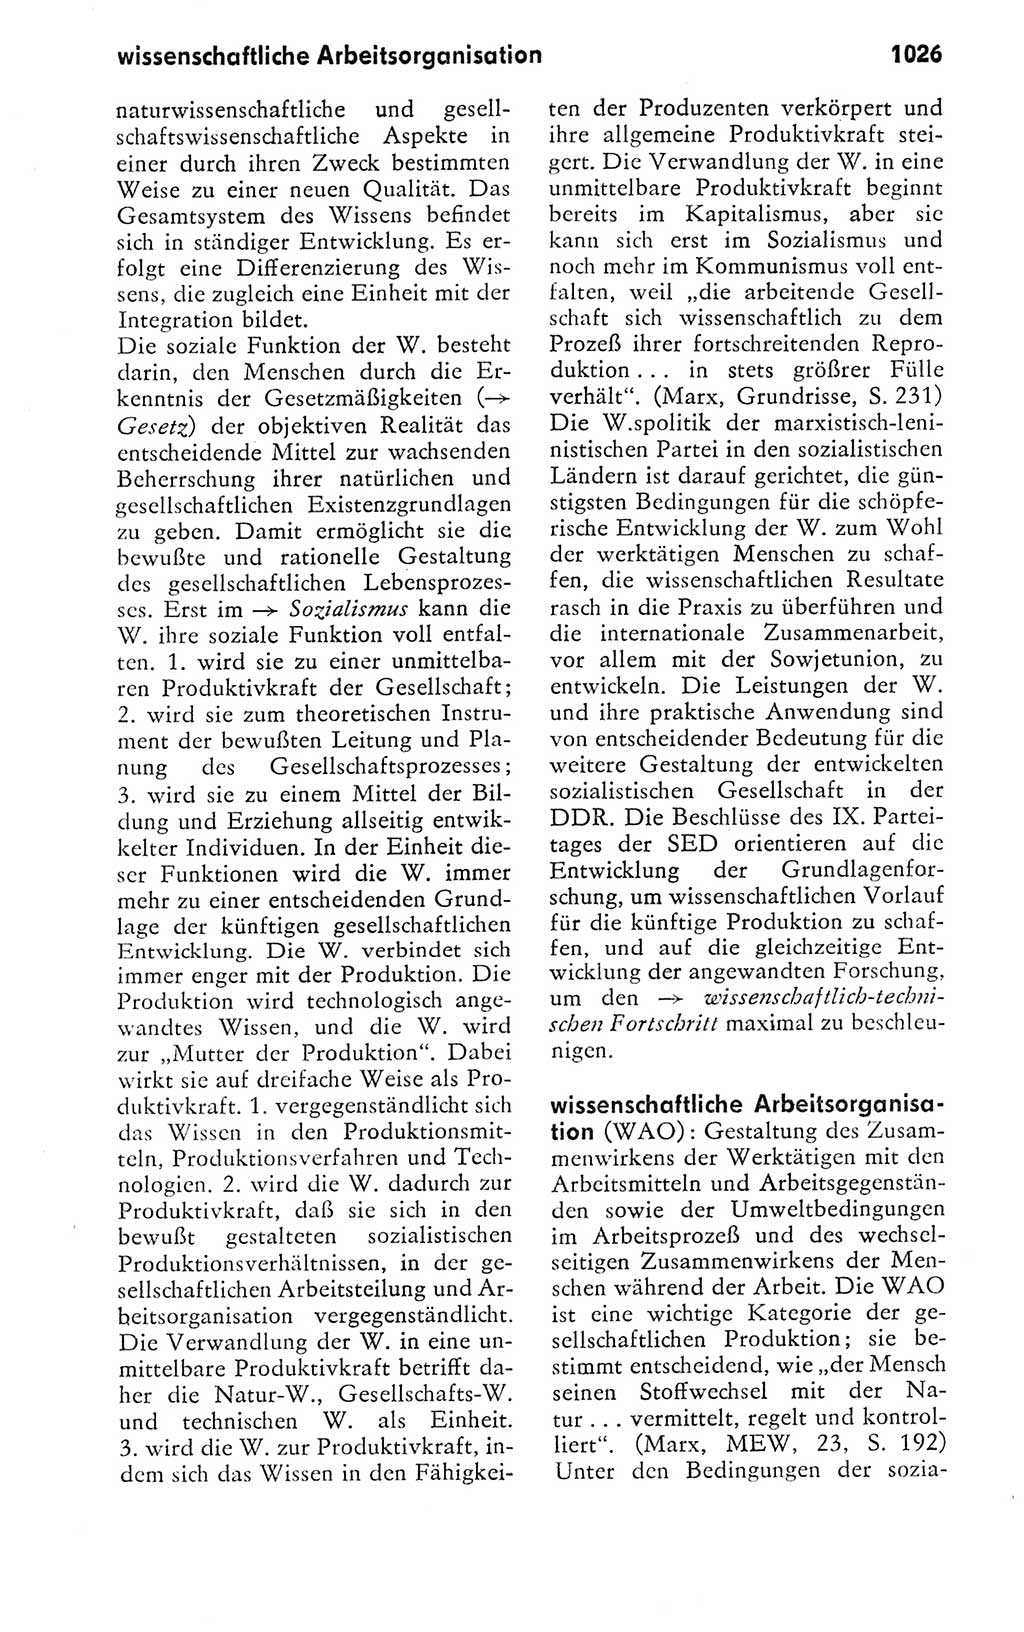 Kleines politisches Wörterbuch [Deutsche Demokratische Republik (DDR)] 1978, Seite 1026 (Kl. pol. Wb. DDR 1978, S. 1026)